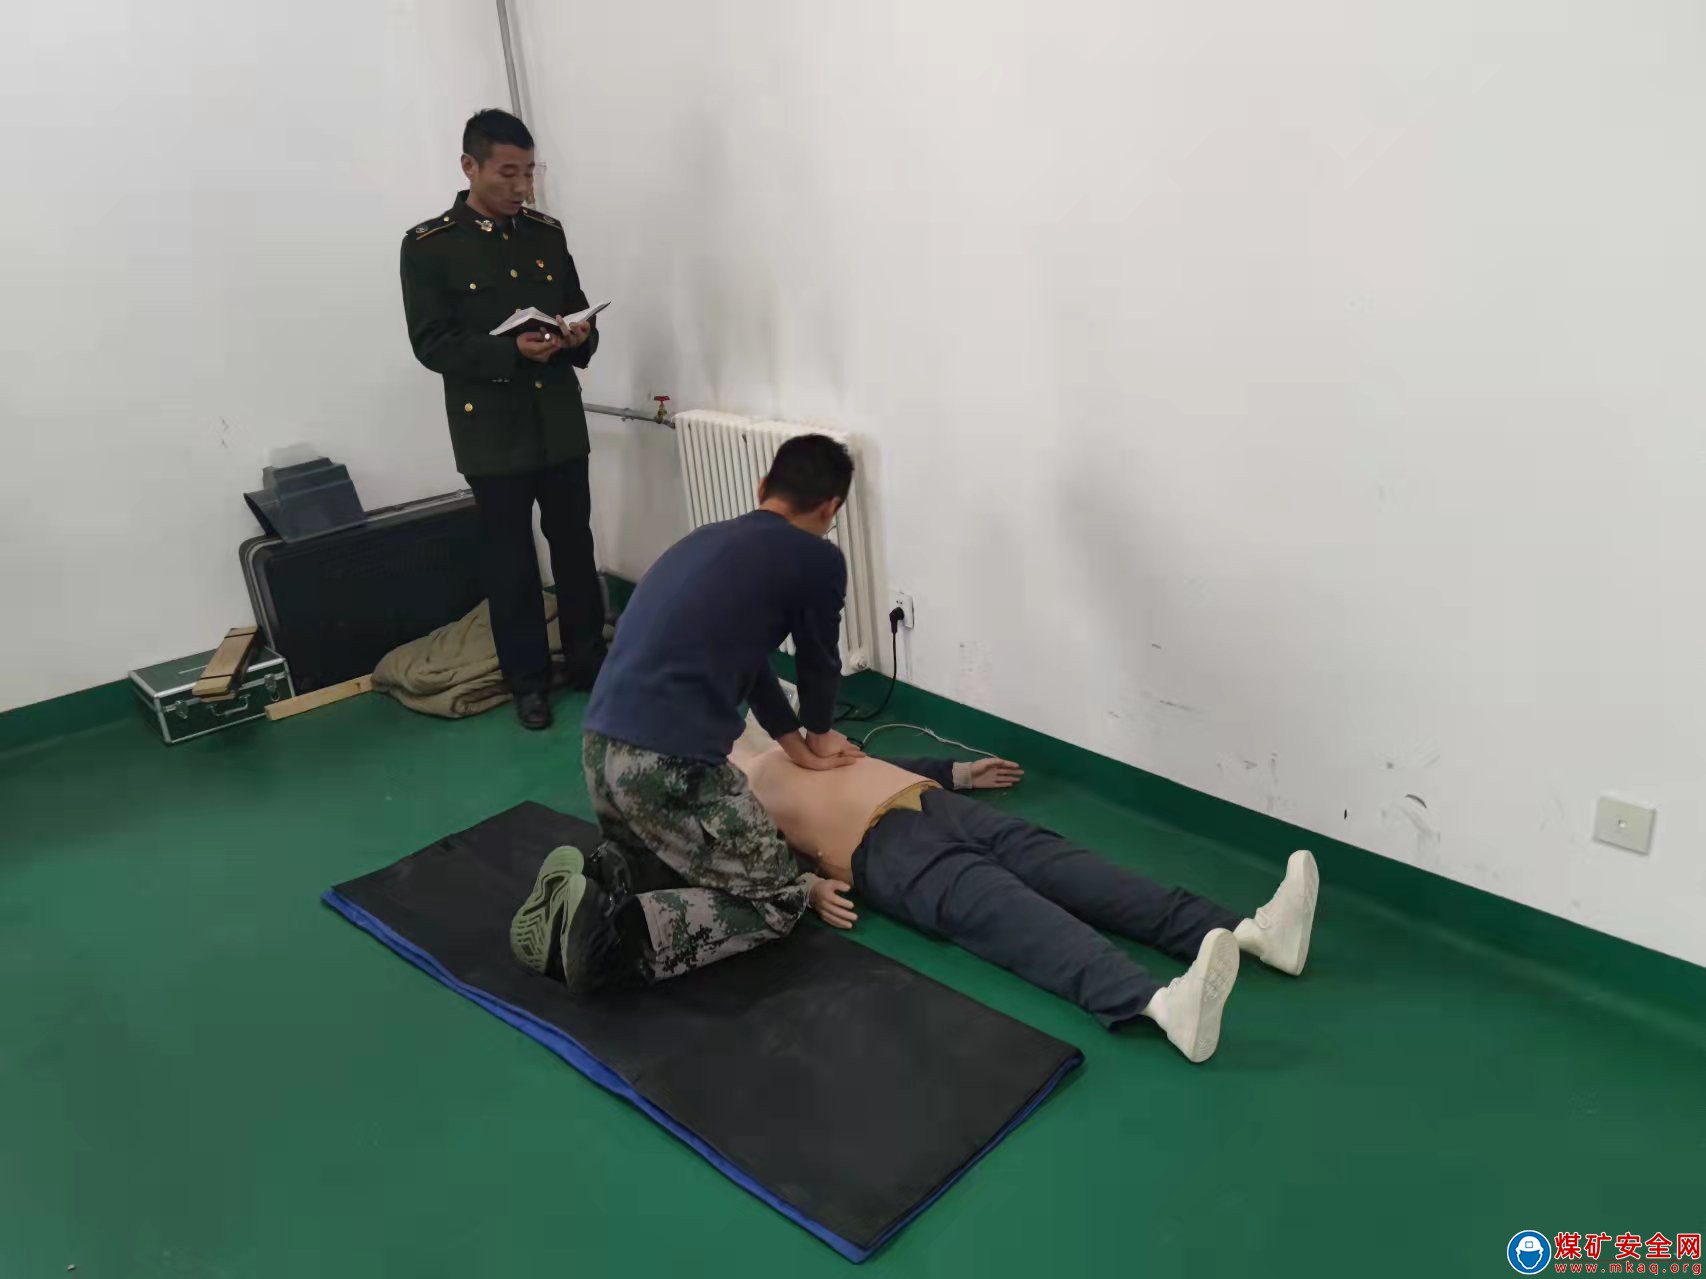 蒲白救護消防大隊袁大灘中隊強化應急救援訓練提高隊伍實戰能力